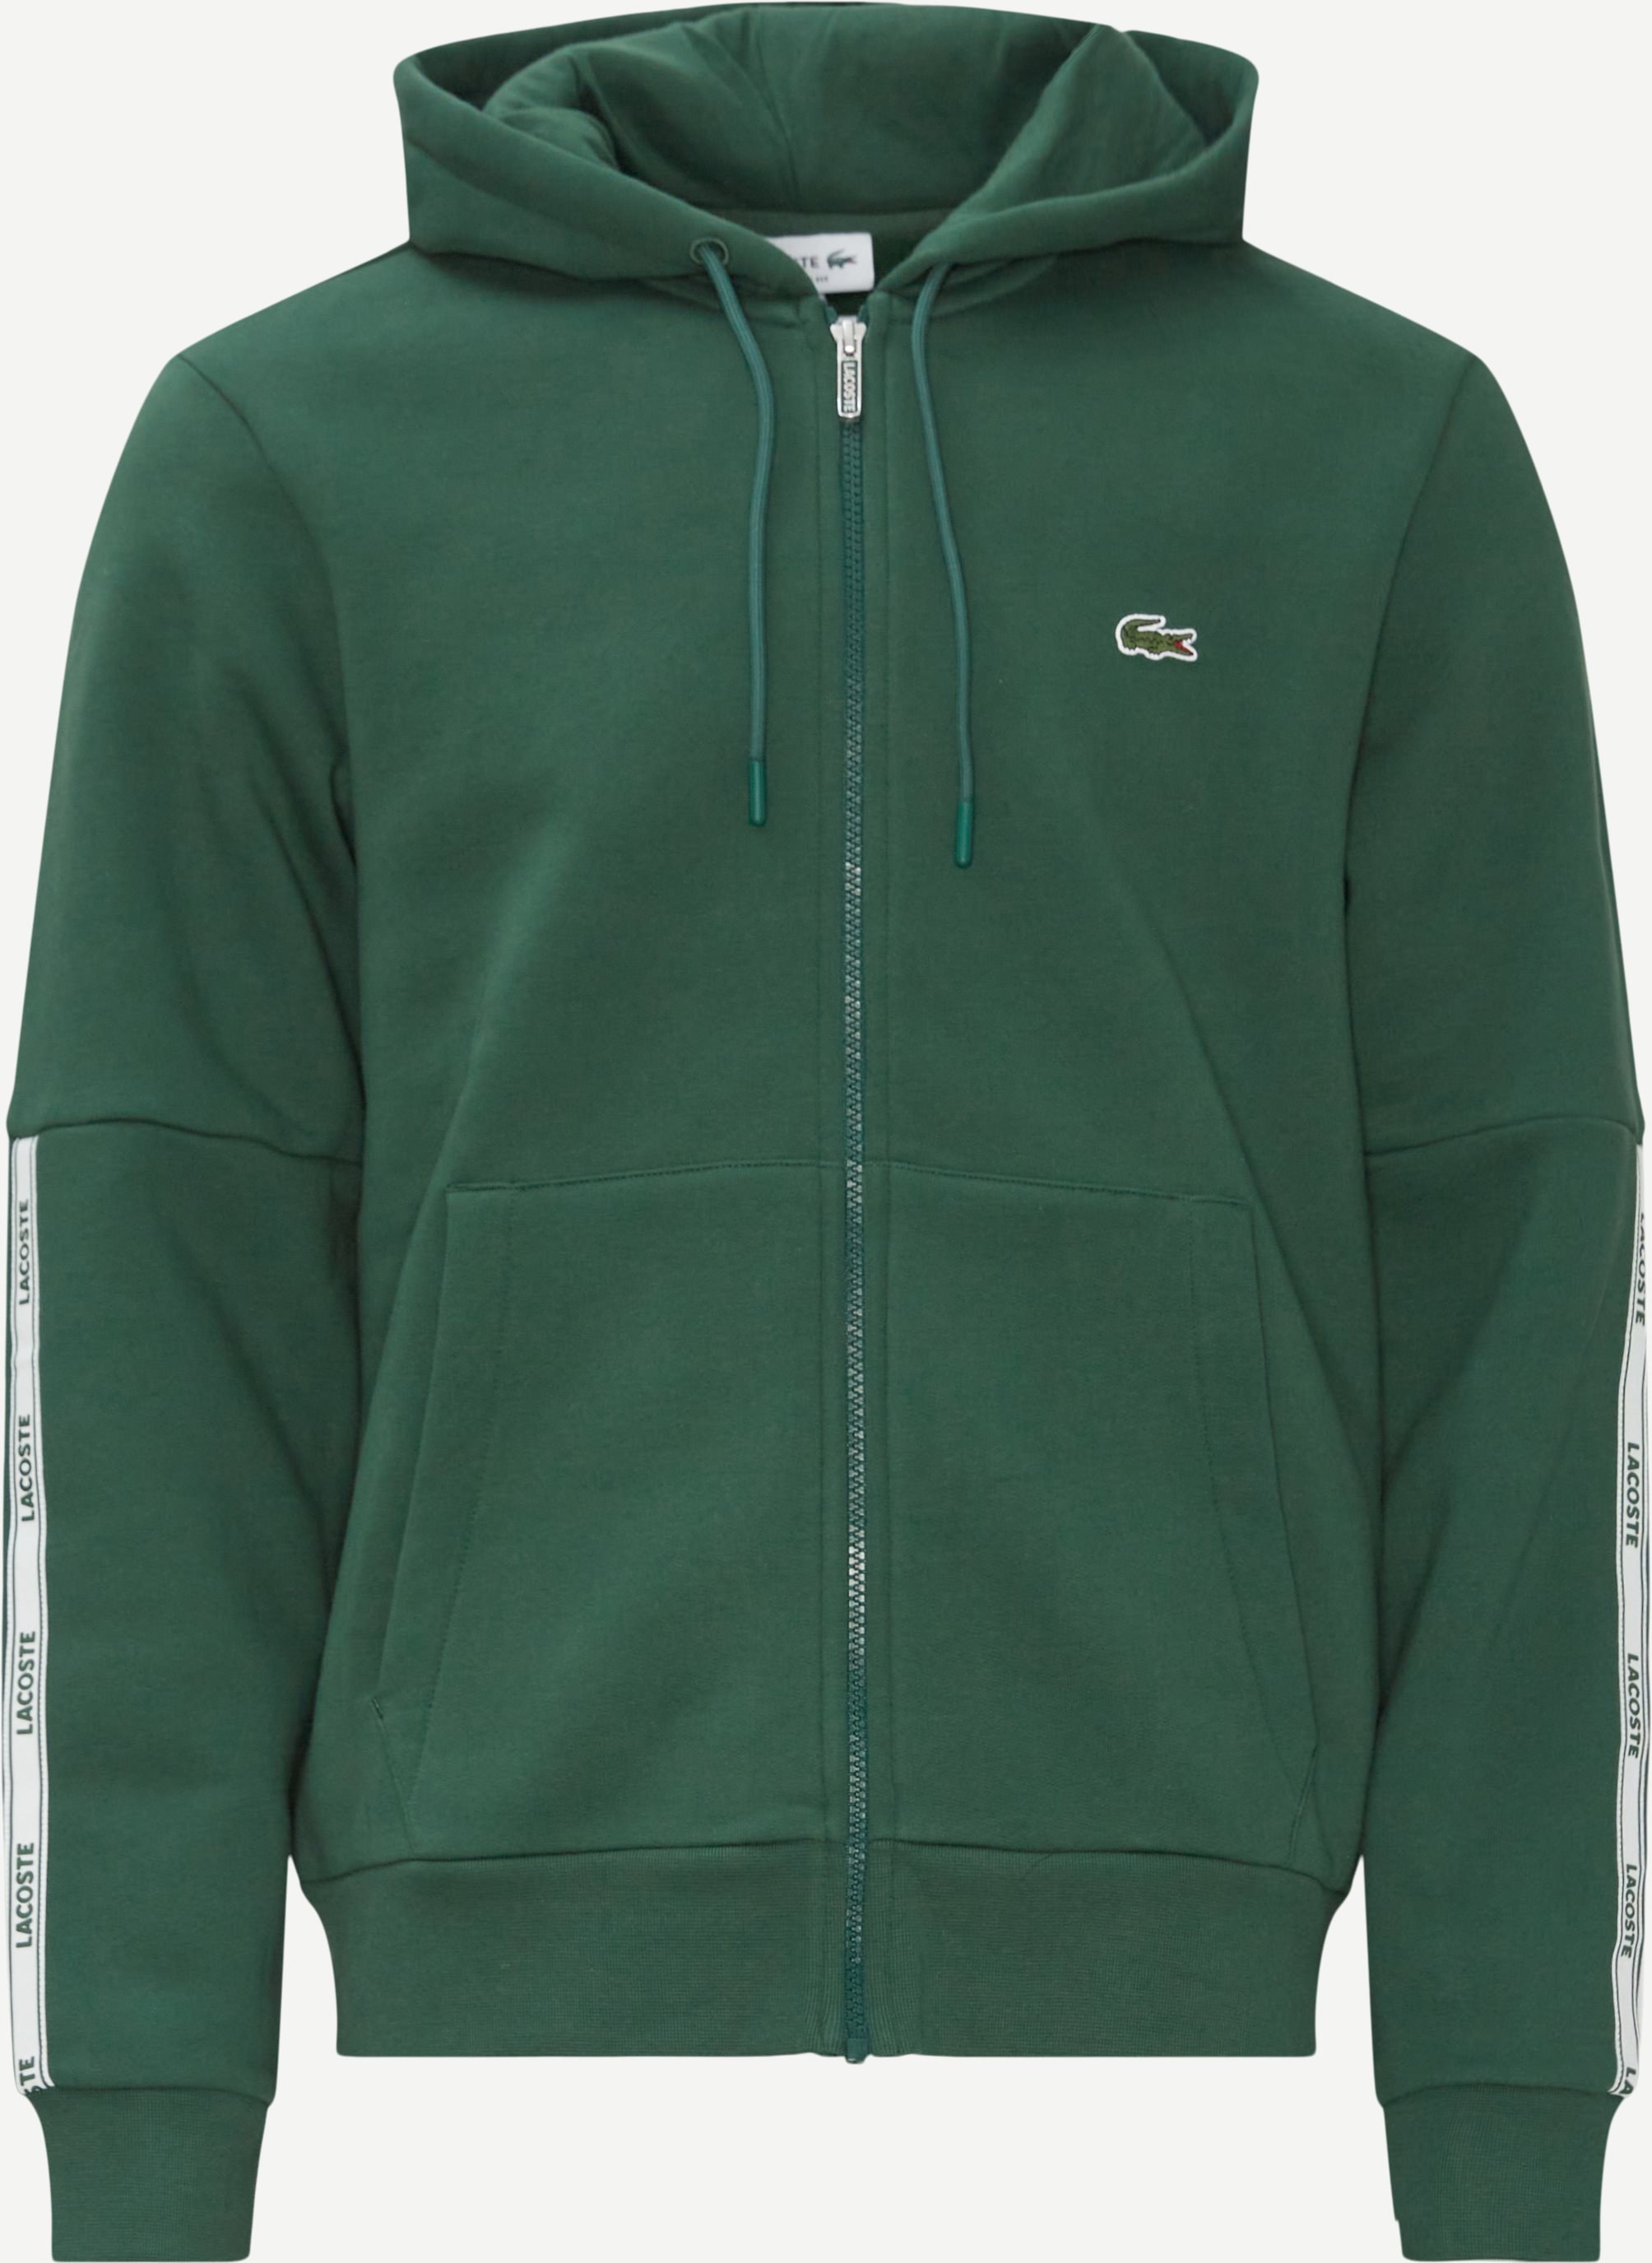 Sweatshirts - Classic fit - Grön